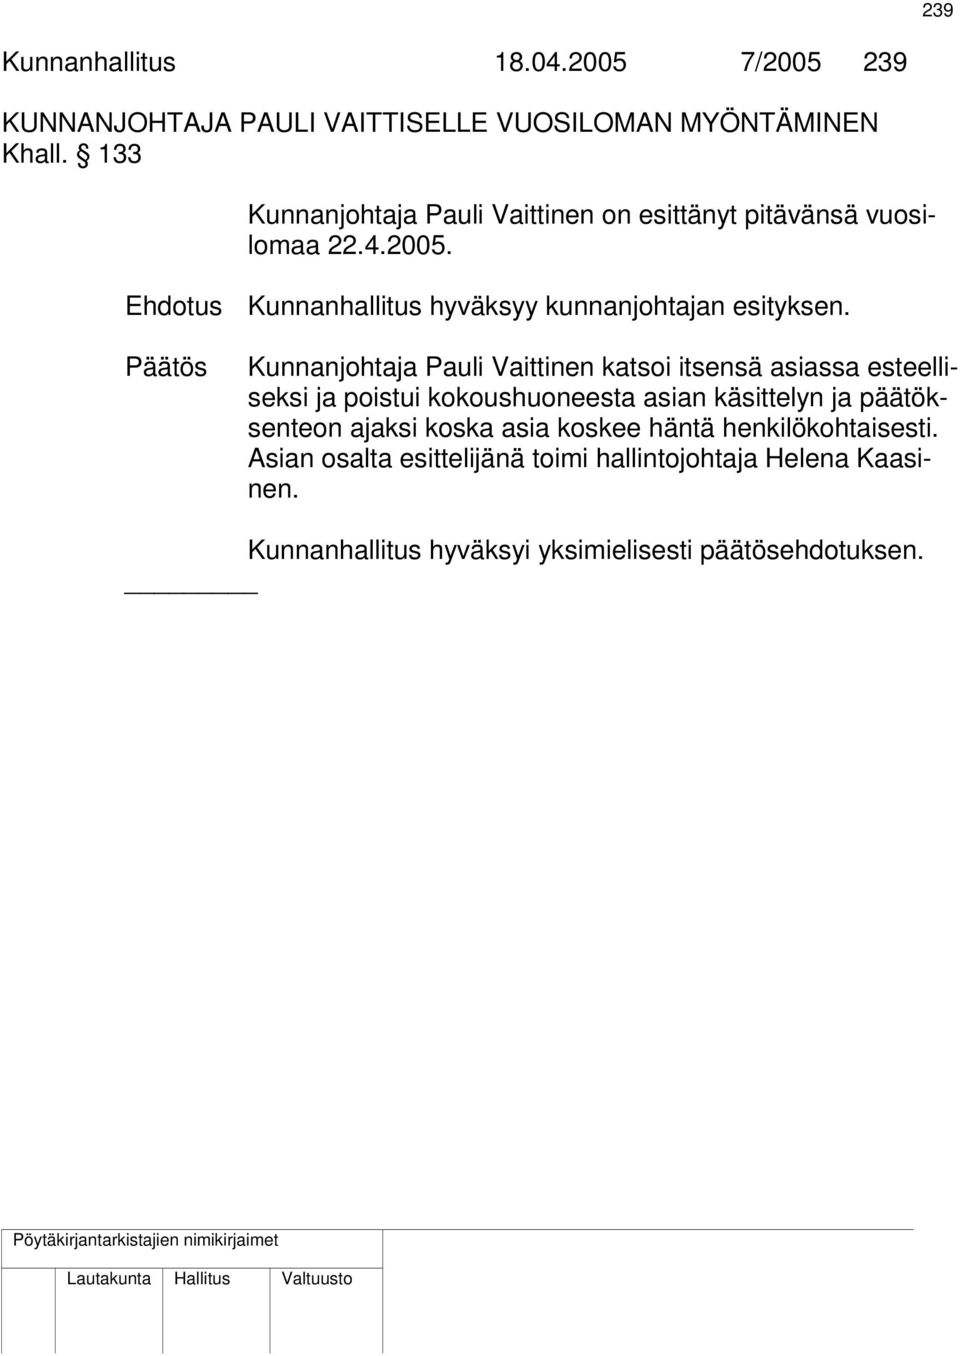 Päätös Kunnanjohtaja Pauli Vaittinen katsoi itsensä asiassa esteelliseksi ja poistui kokoushuoneesta asian käsittelyn ja päätöksenteon